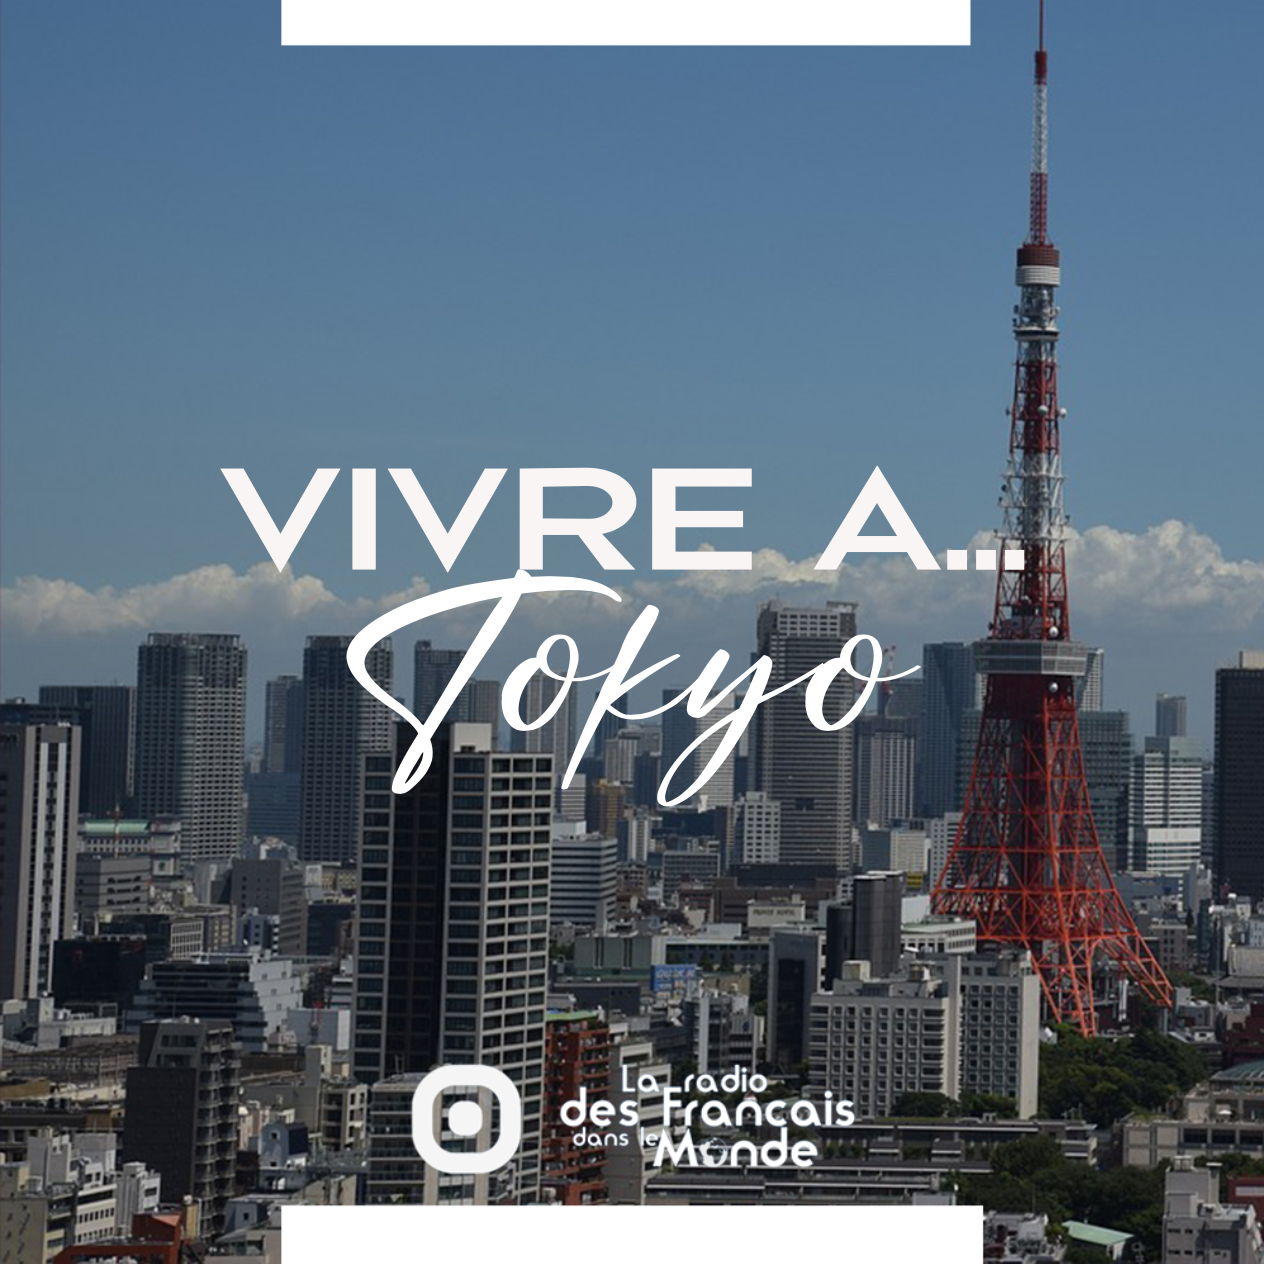 La radio des français dans le monde. Vivre à Tokyo, Japon (Asie)